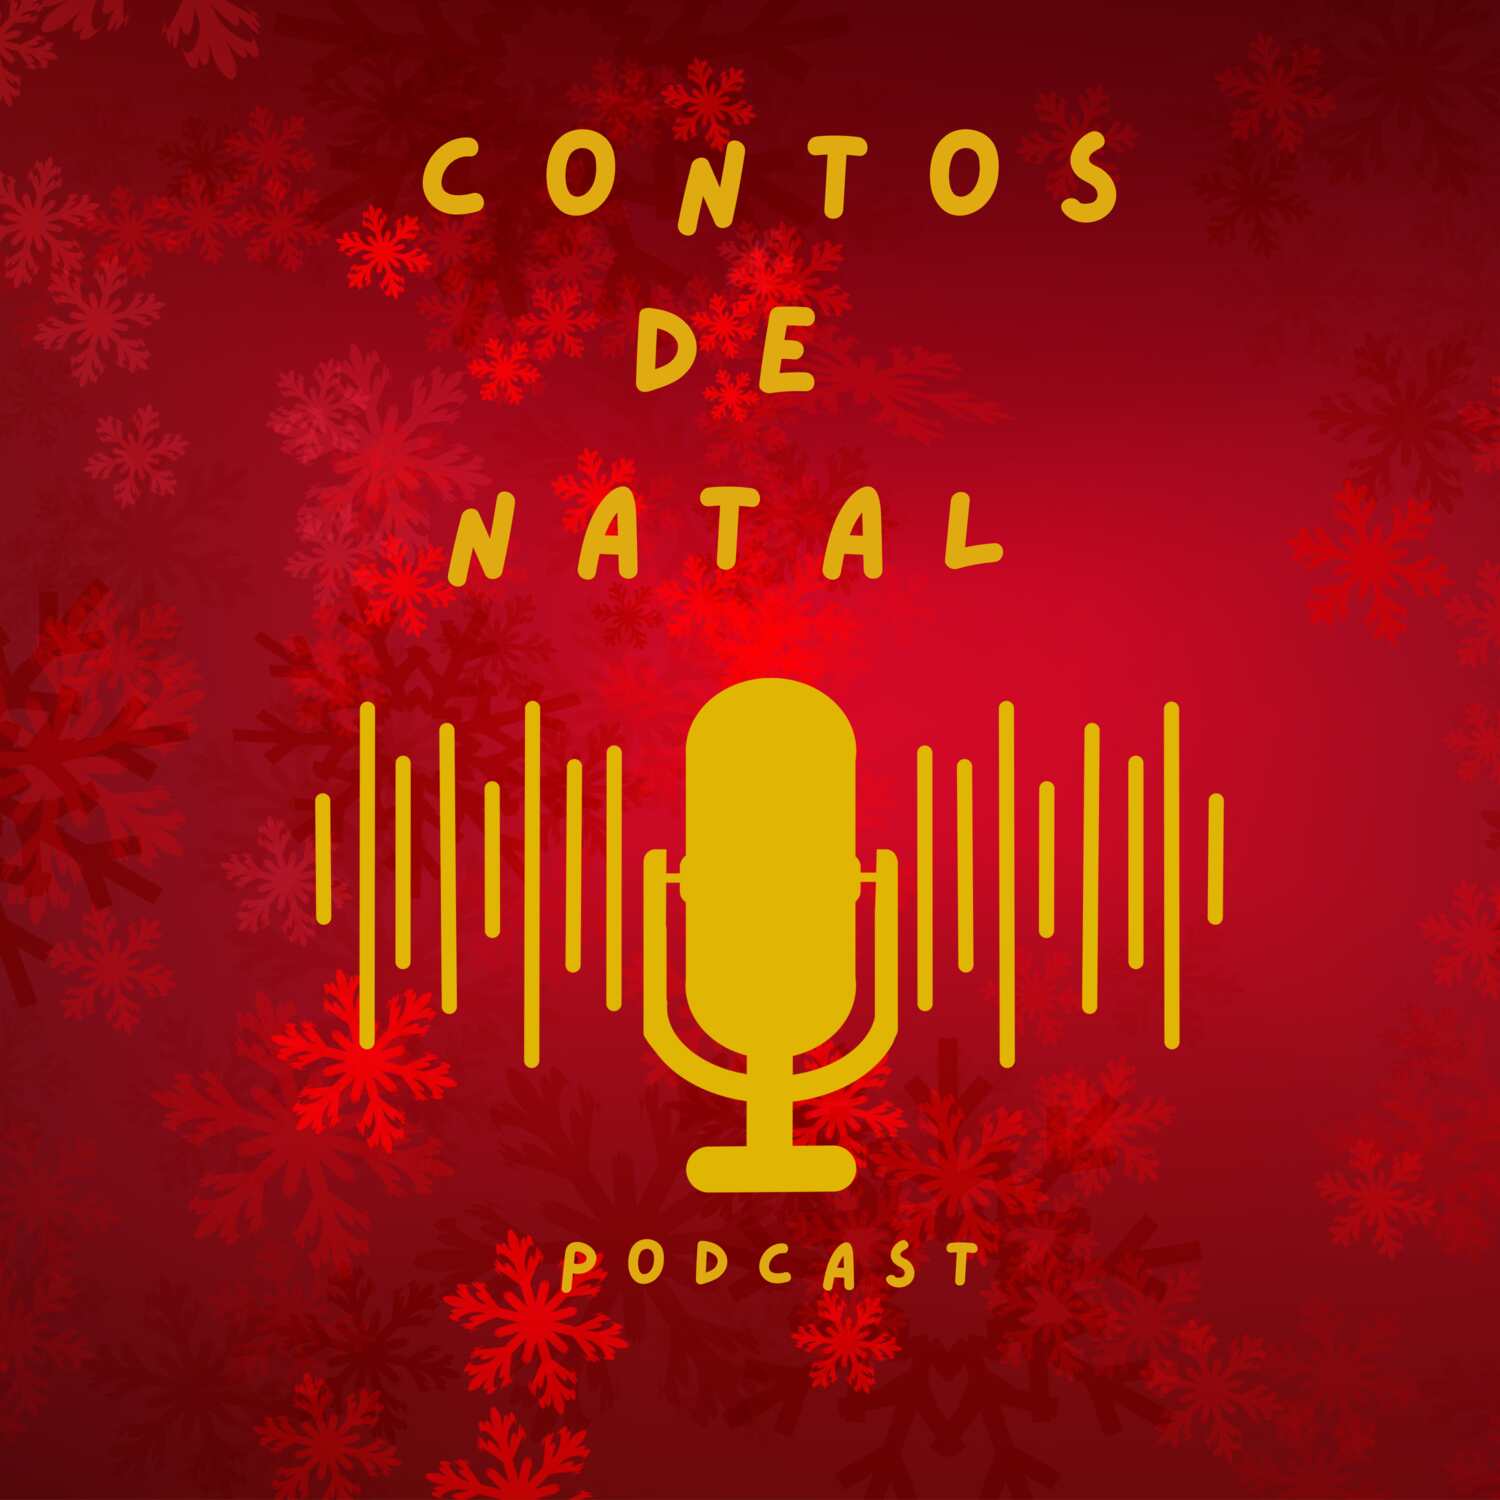 contosdenatal Podcast logo